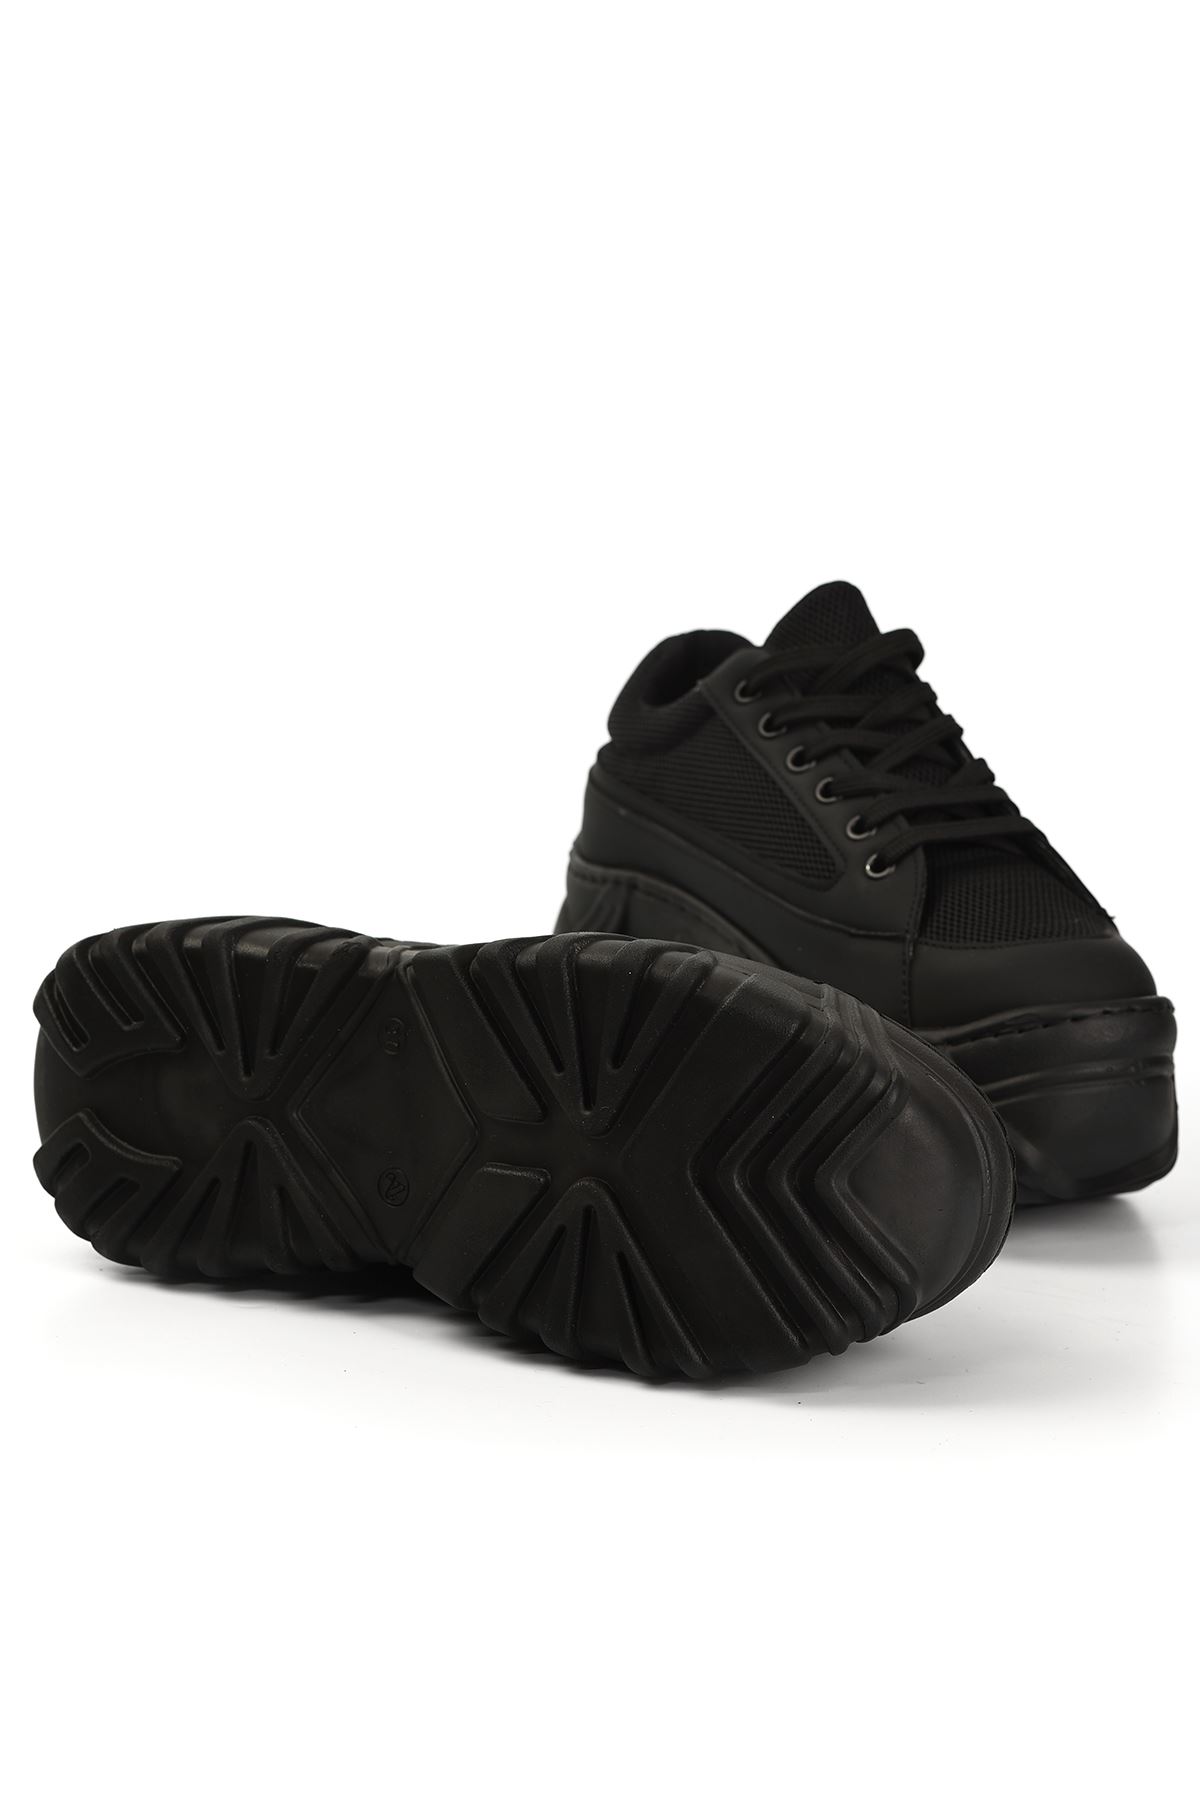 Erma File Detaylı Bağcıklı Kadın Spor Ayakkabı Siyah